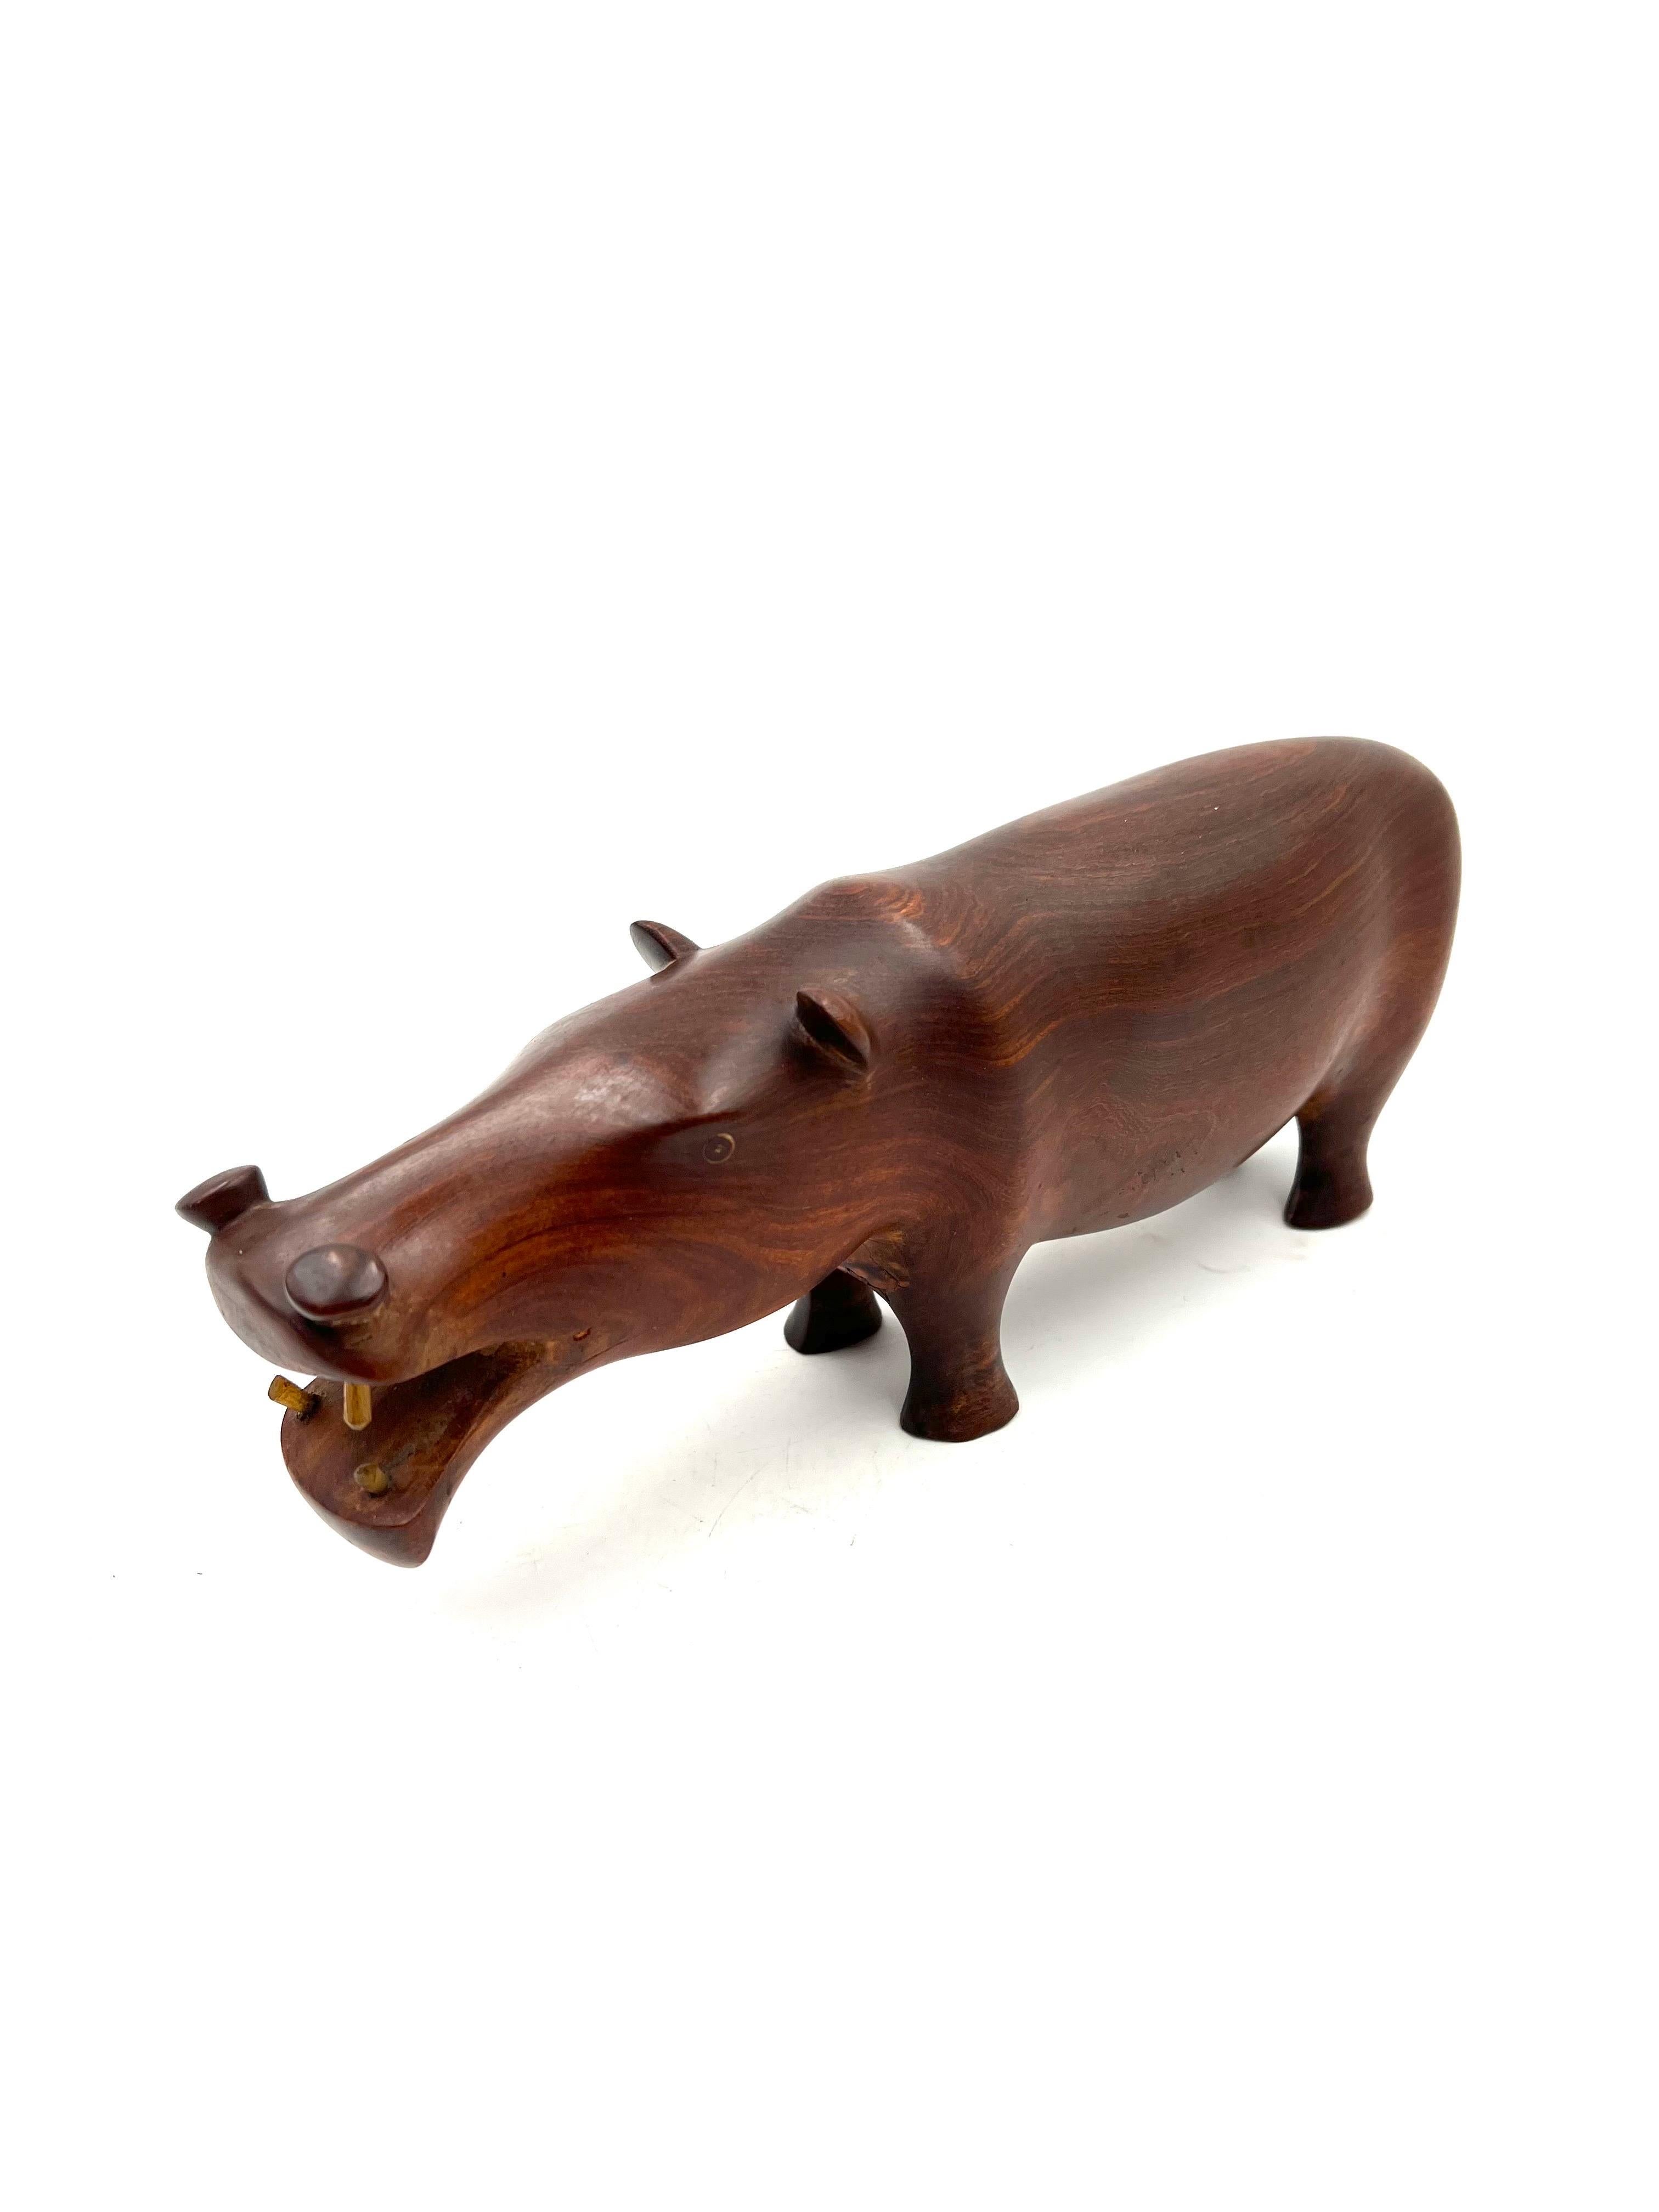 Magnifique et rare sculpture d'Hippopotame en bois de rose sculpté à la main avec des dents en os, circa 1970, bel état d'origine sans éclats, fissures ou rayures.